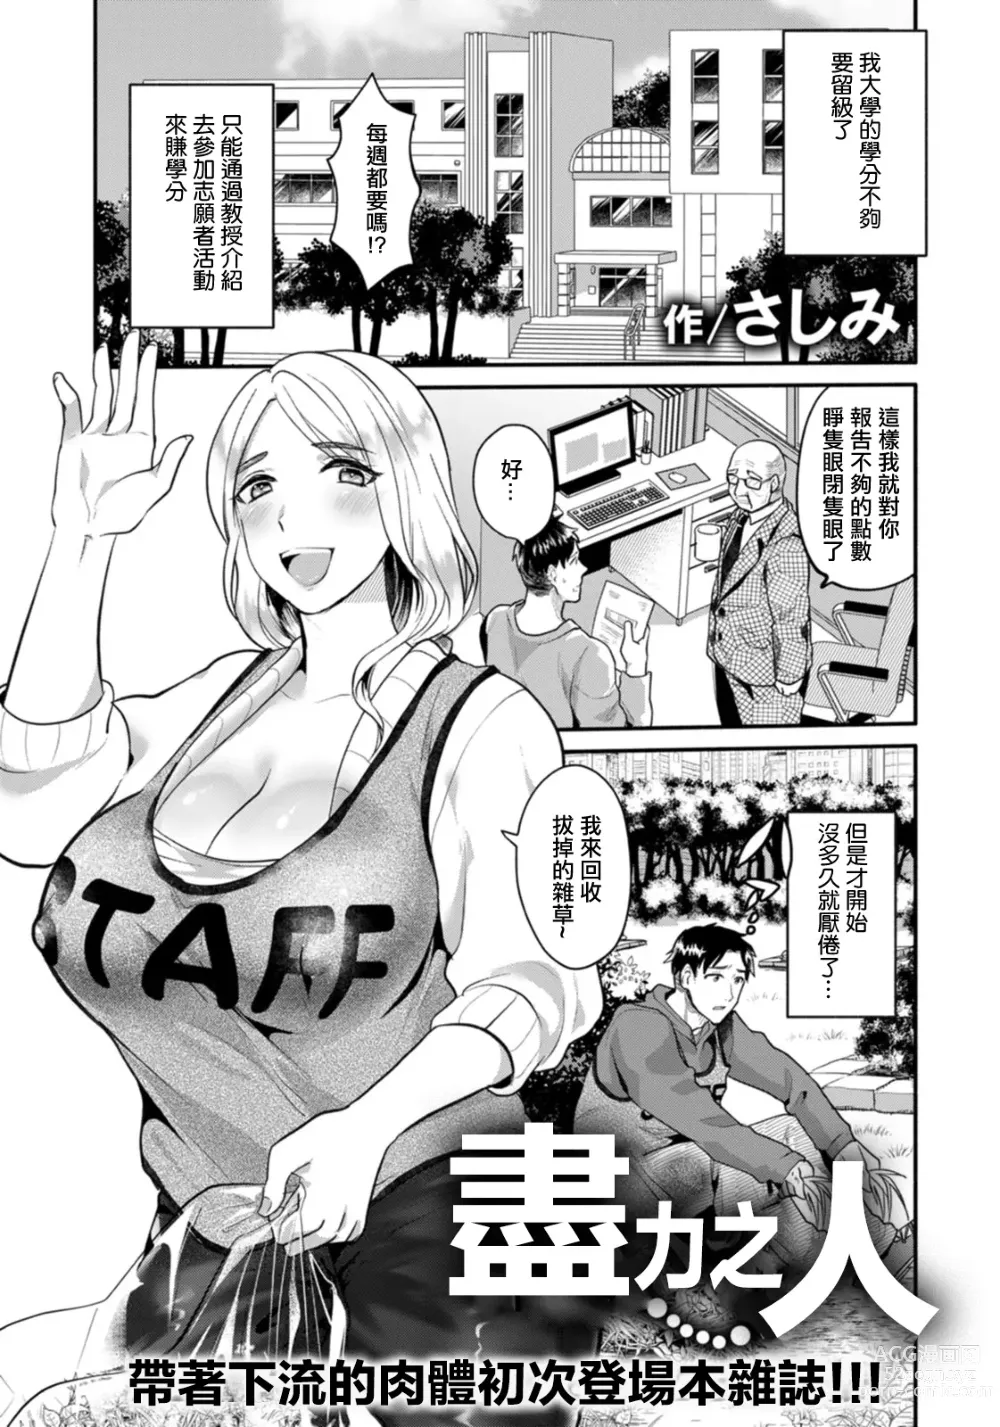 Page 1 of manga 盡力之人